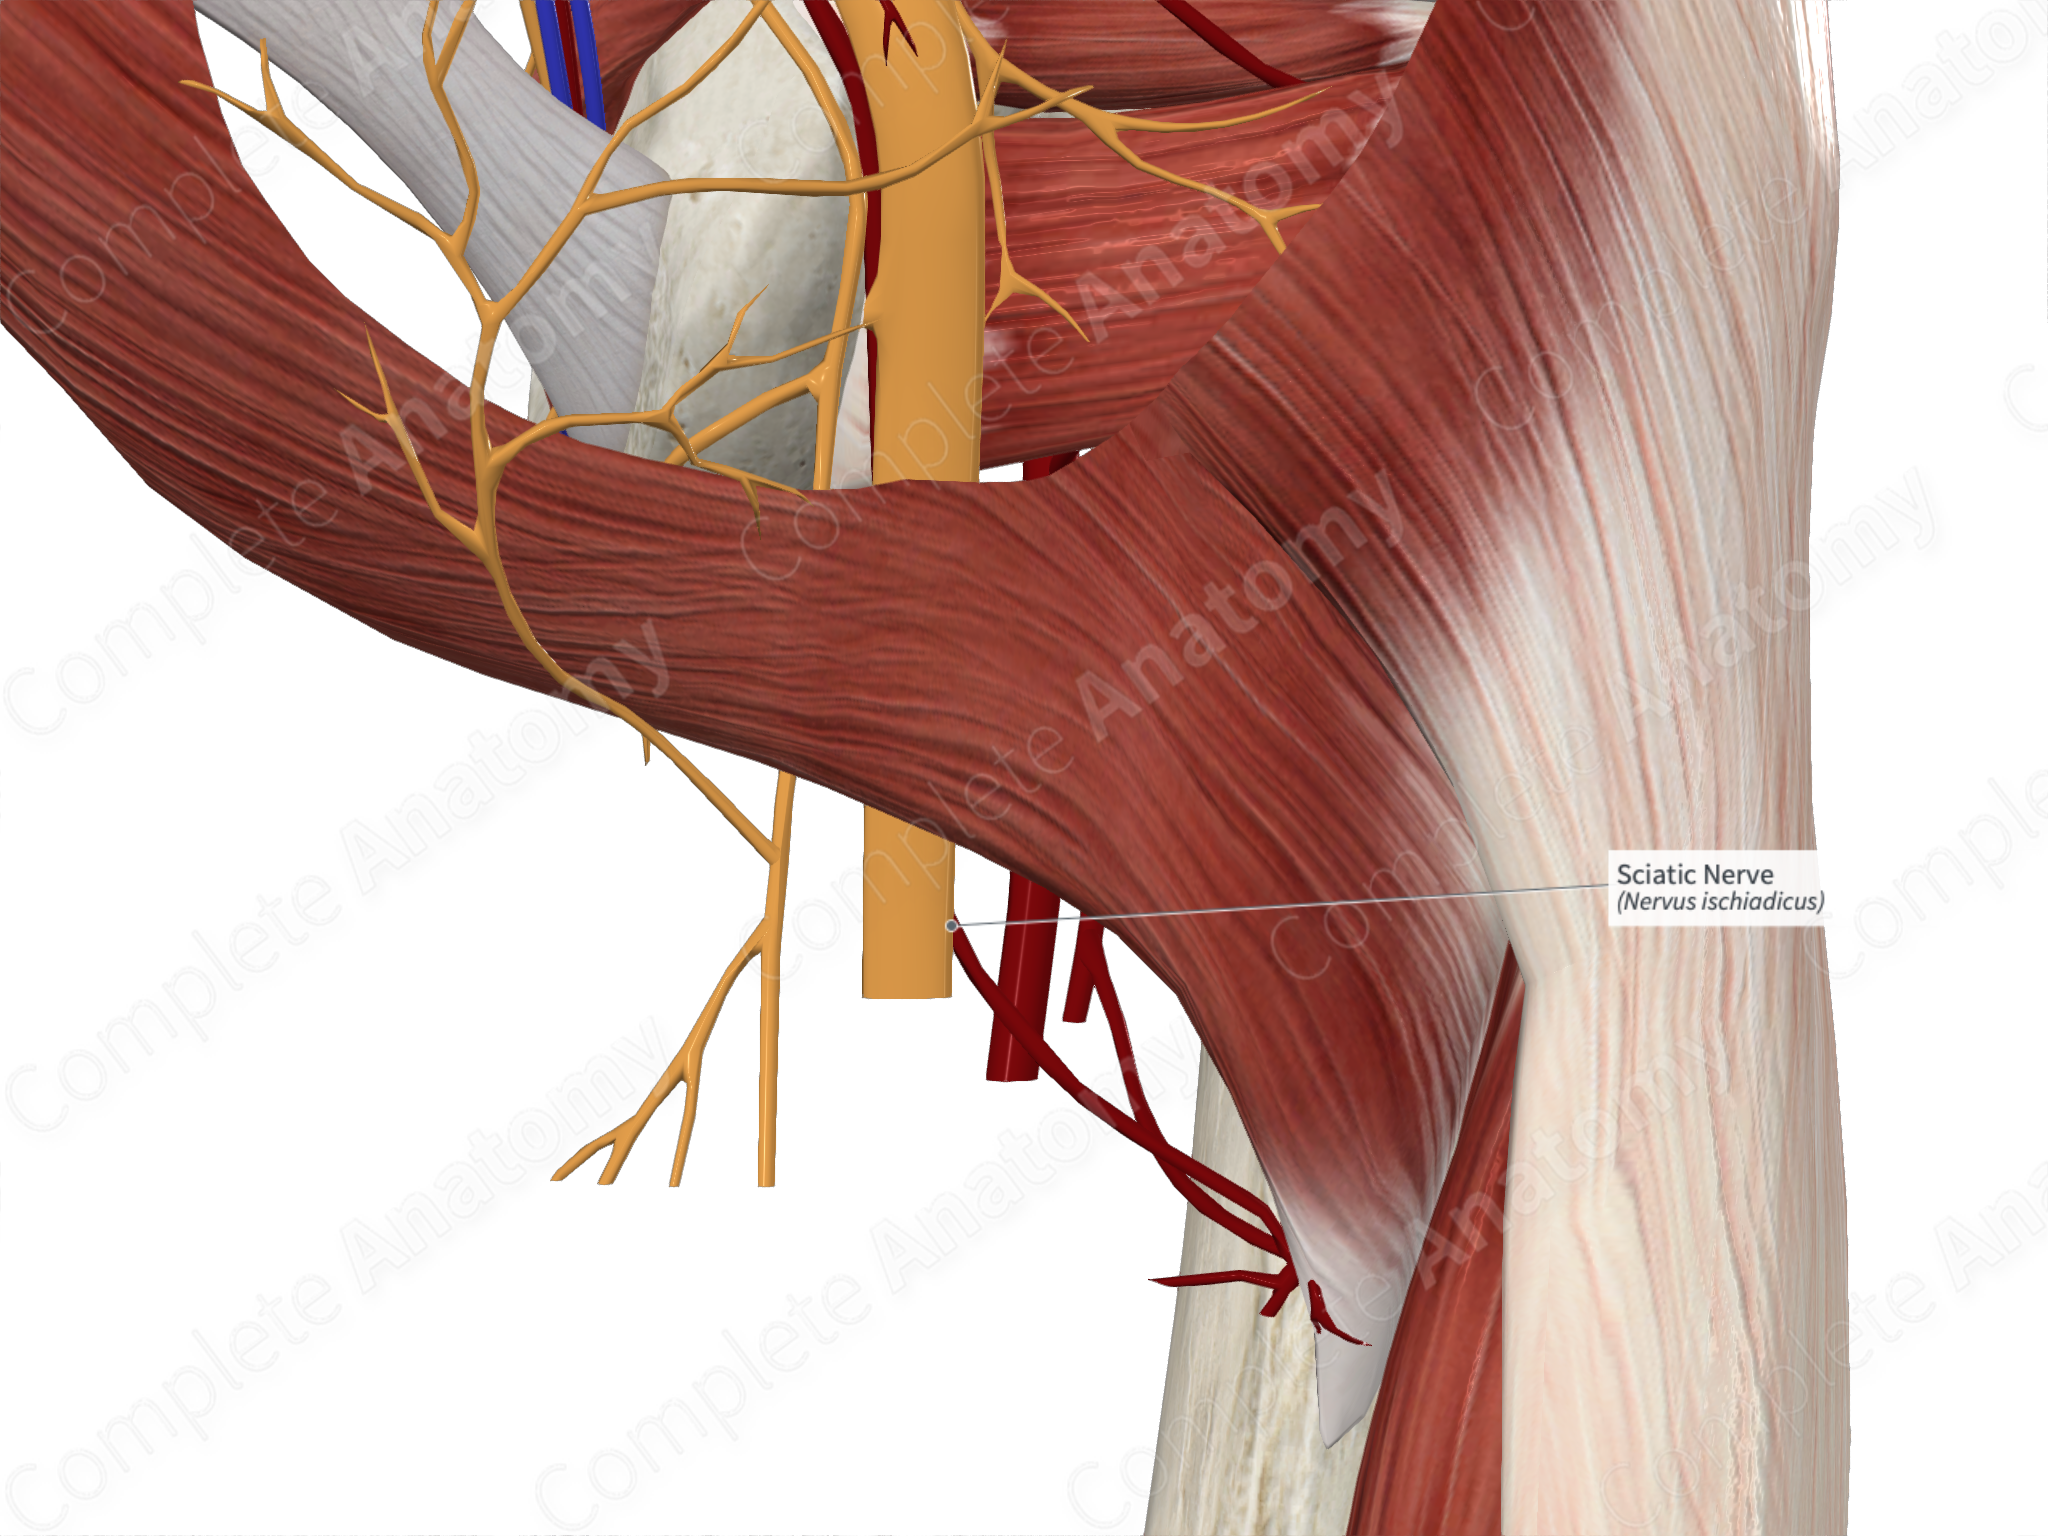 The Sciatic Nerve - Course - Motor - Sensory - TeachMeAnatomy